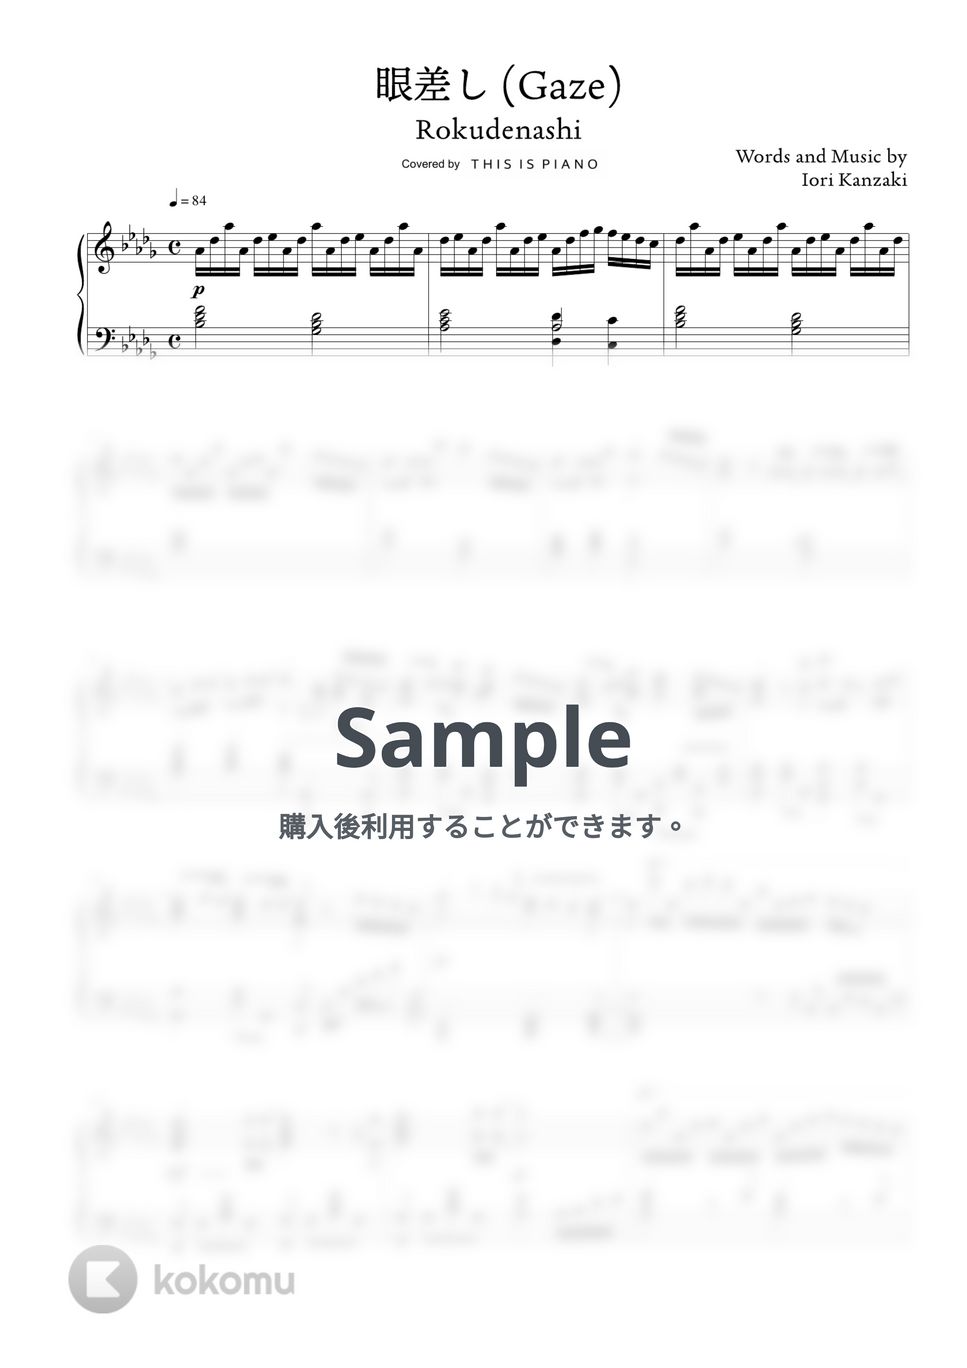 ロクデナシ - 眼差し by THIS IS PIANO